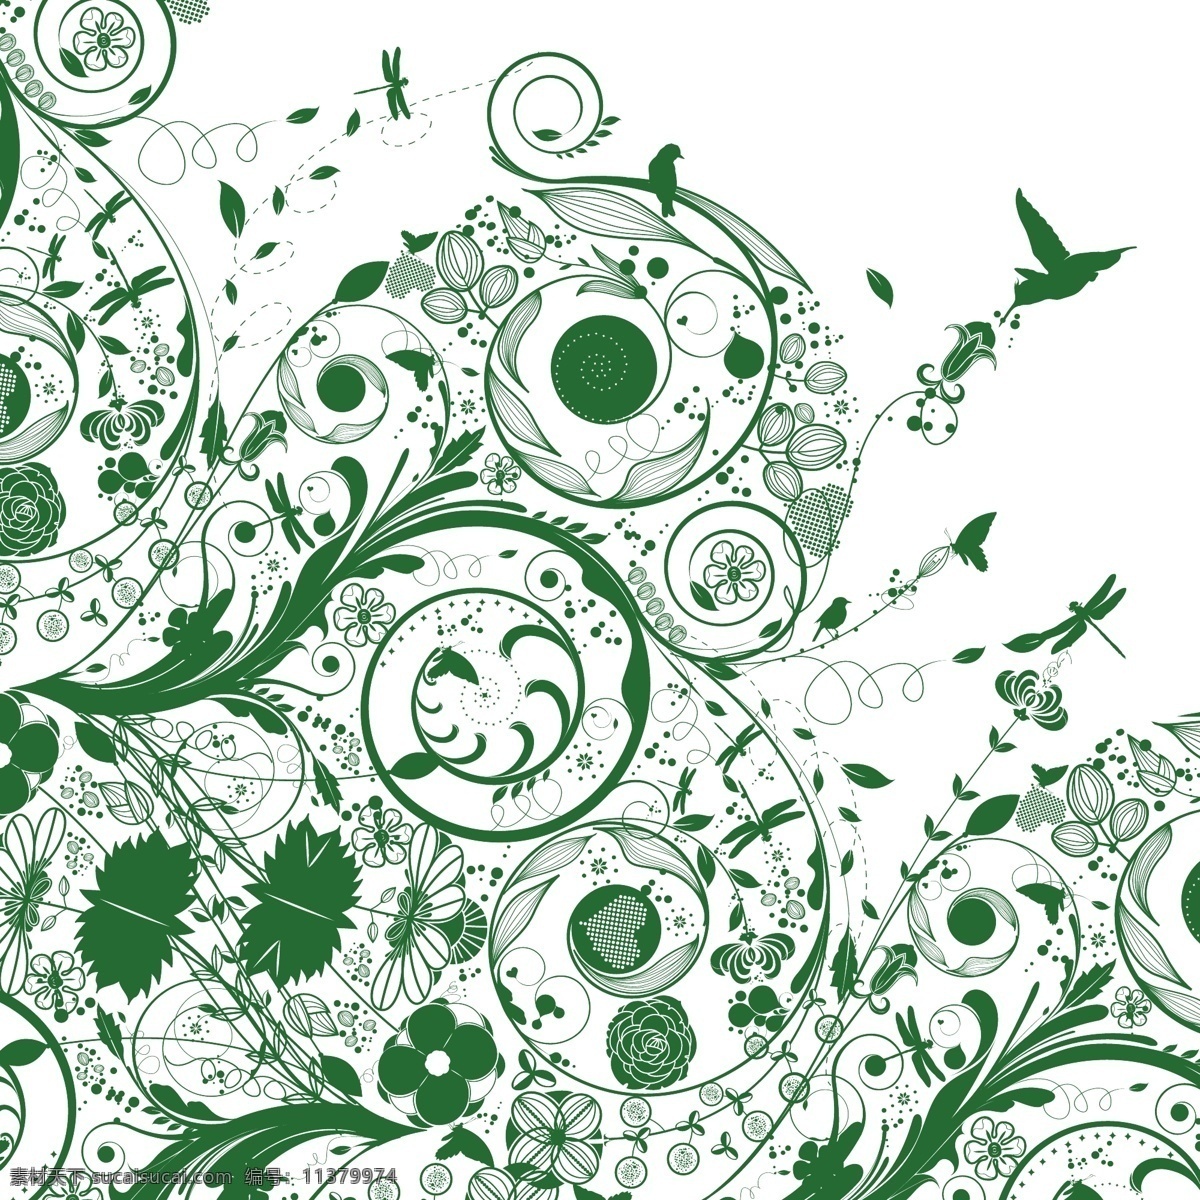 绿色 剪影 旋转 自然 背景 摘要 动物 背景壁纸 花卉和漩涡 自然的轮廓 艺术载体 模板和模型